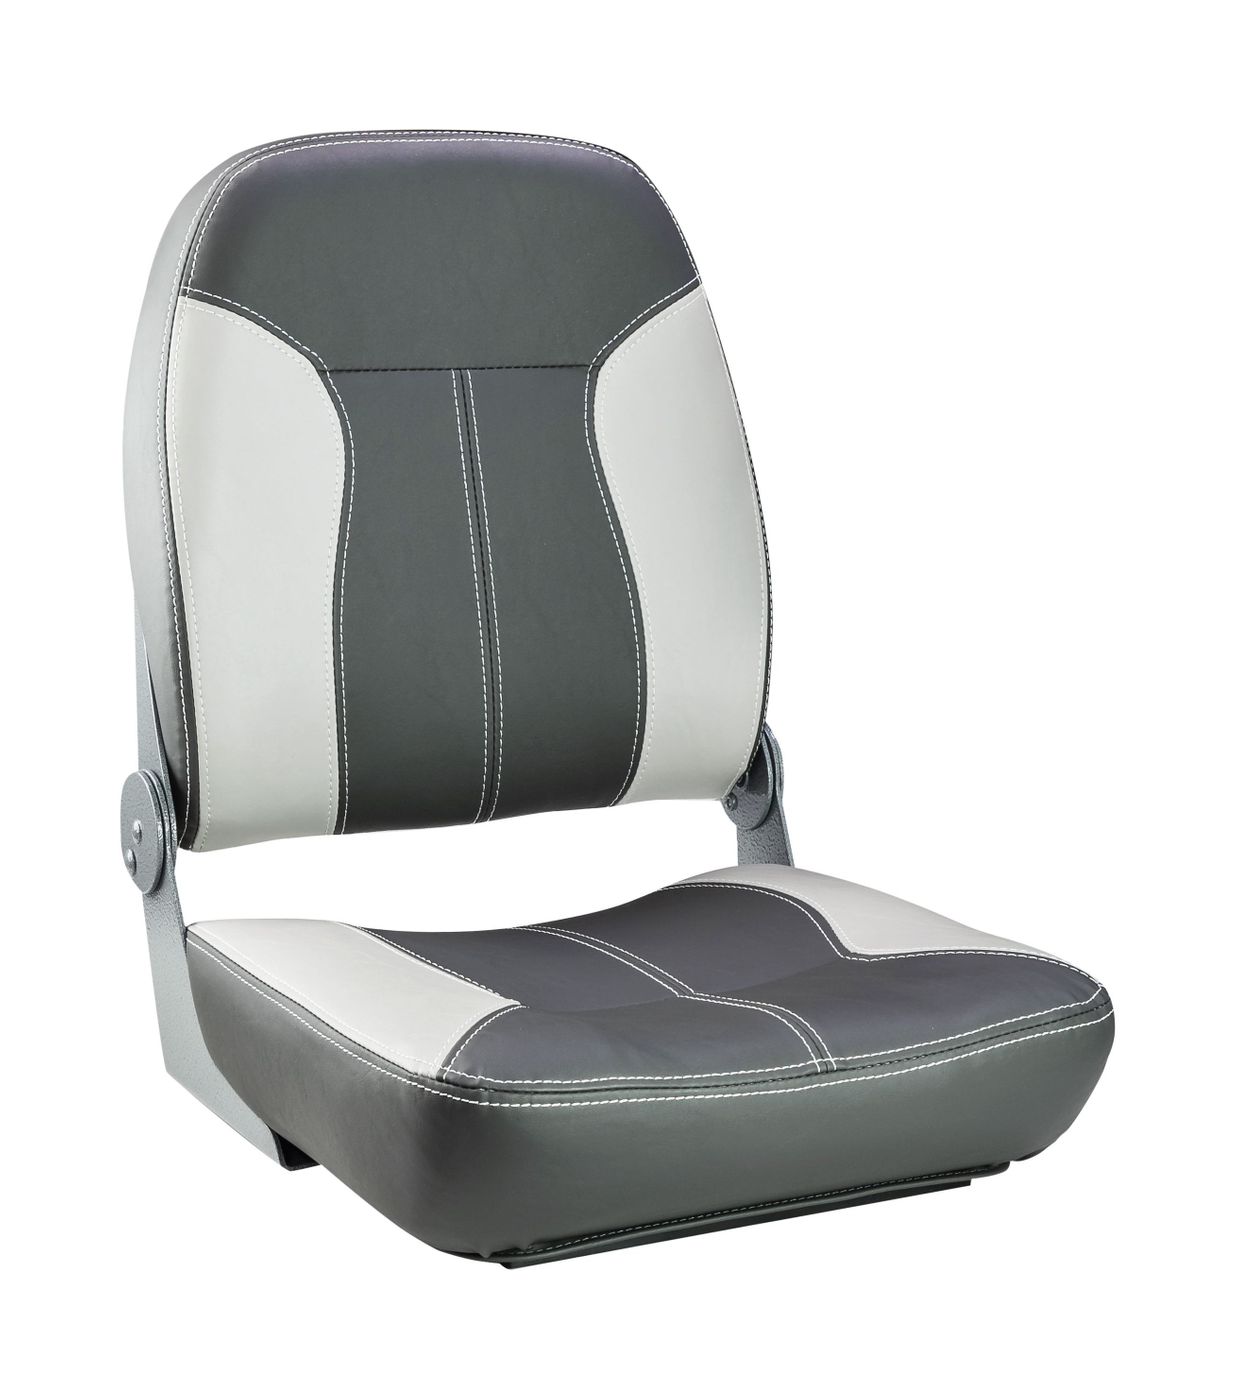 Кресло складное мягкое SPORT с высокой спинкой, серый/темно-серый 1040543 кресло складное мягкое skipper серый темно серый 1061057